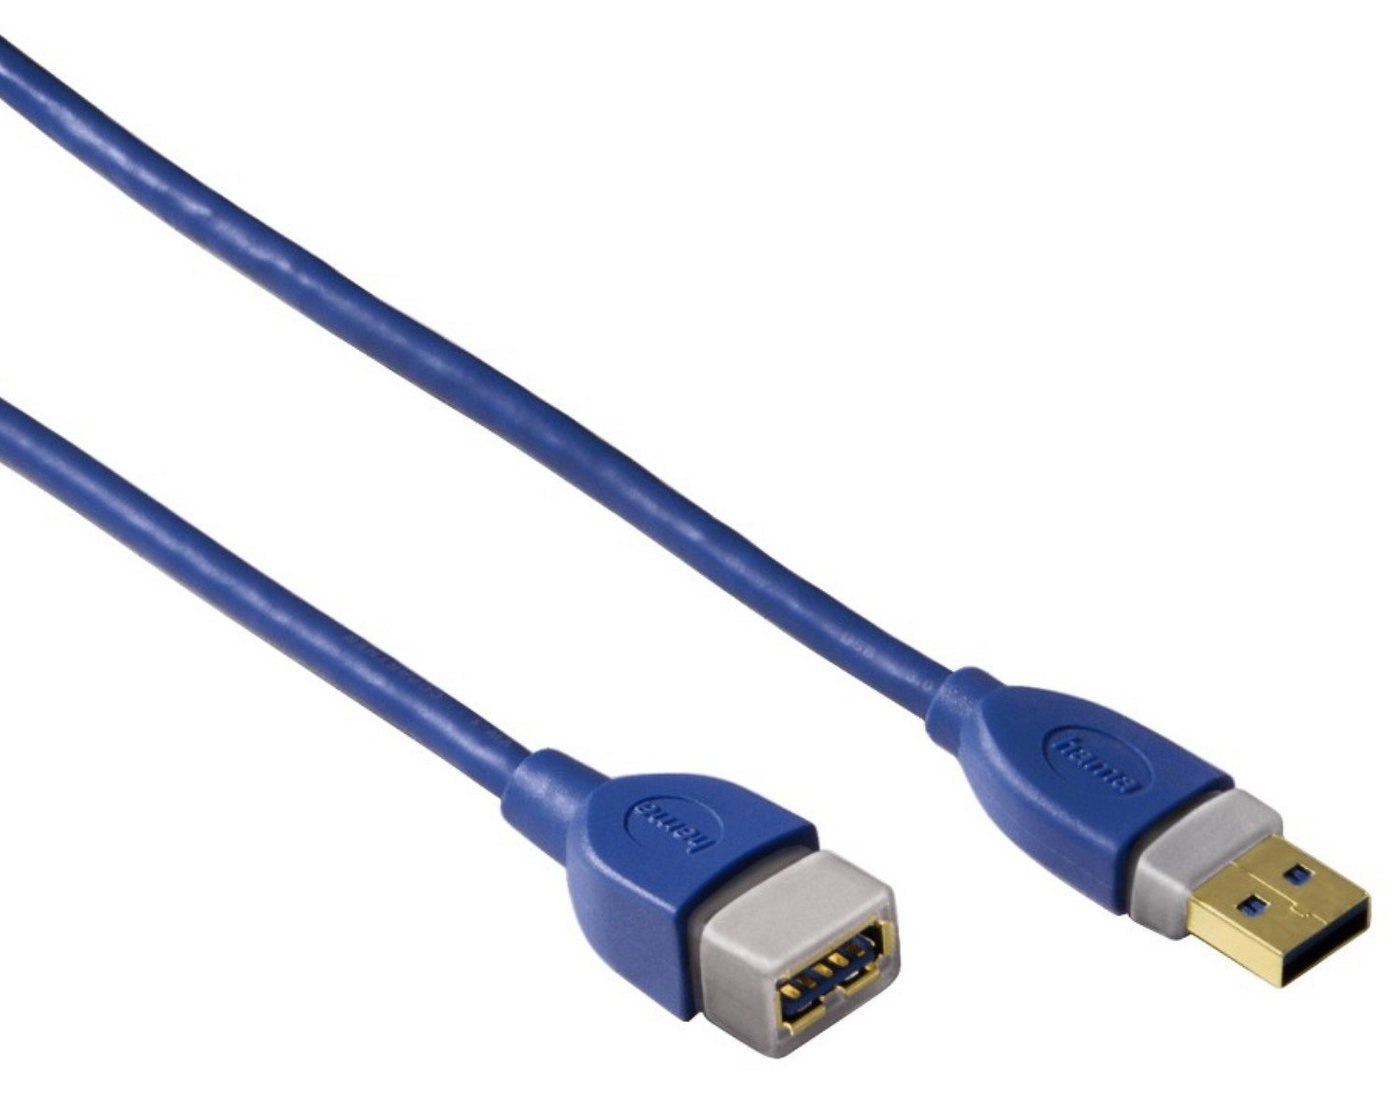 Hama USB 3.0 Verlängerung 1,8m Verlängerungs-Kabel Blau USB-Kabel, USB Typ A, USB Typ A, USB 3.0, doppelt geschirmt, vergoldet, für PC, Drucker, USB-Hub etc. von Hama